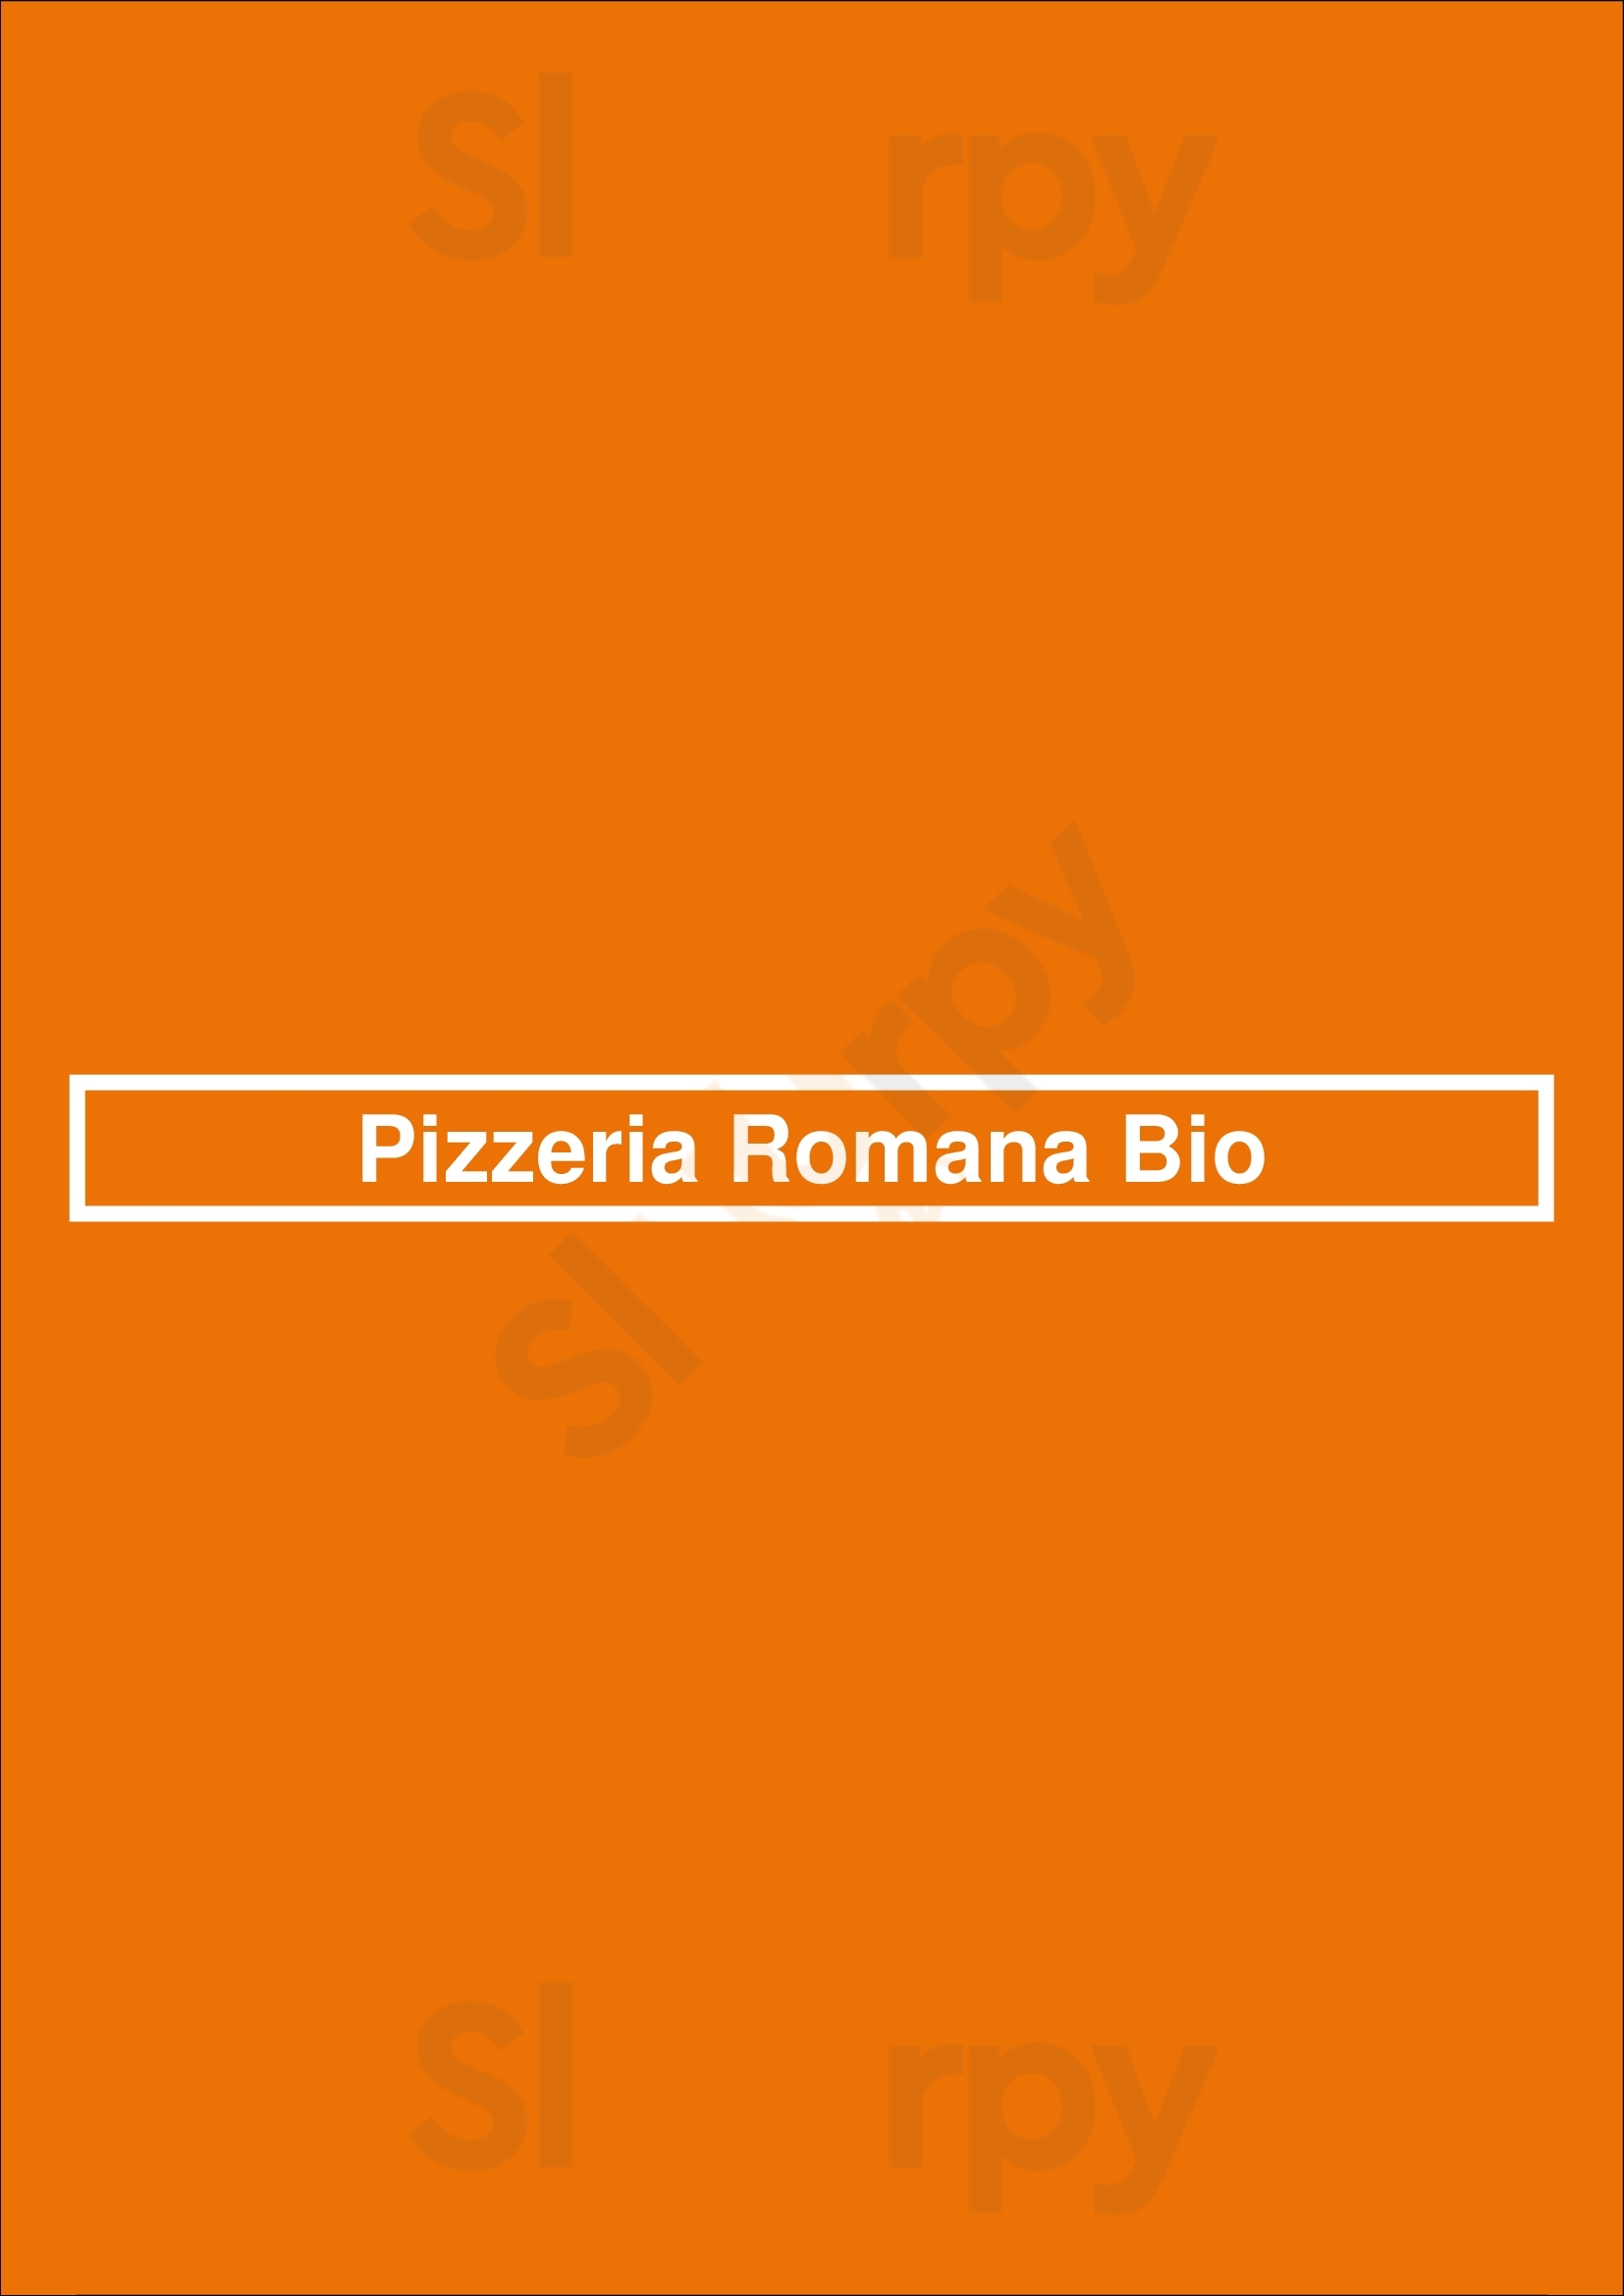 Pizzeria Romana Bio Lisboa Menu - 1